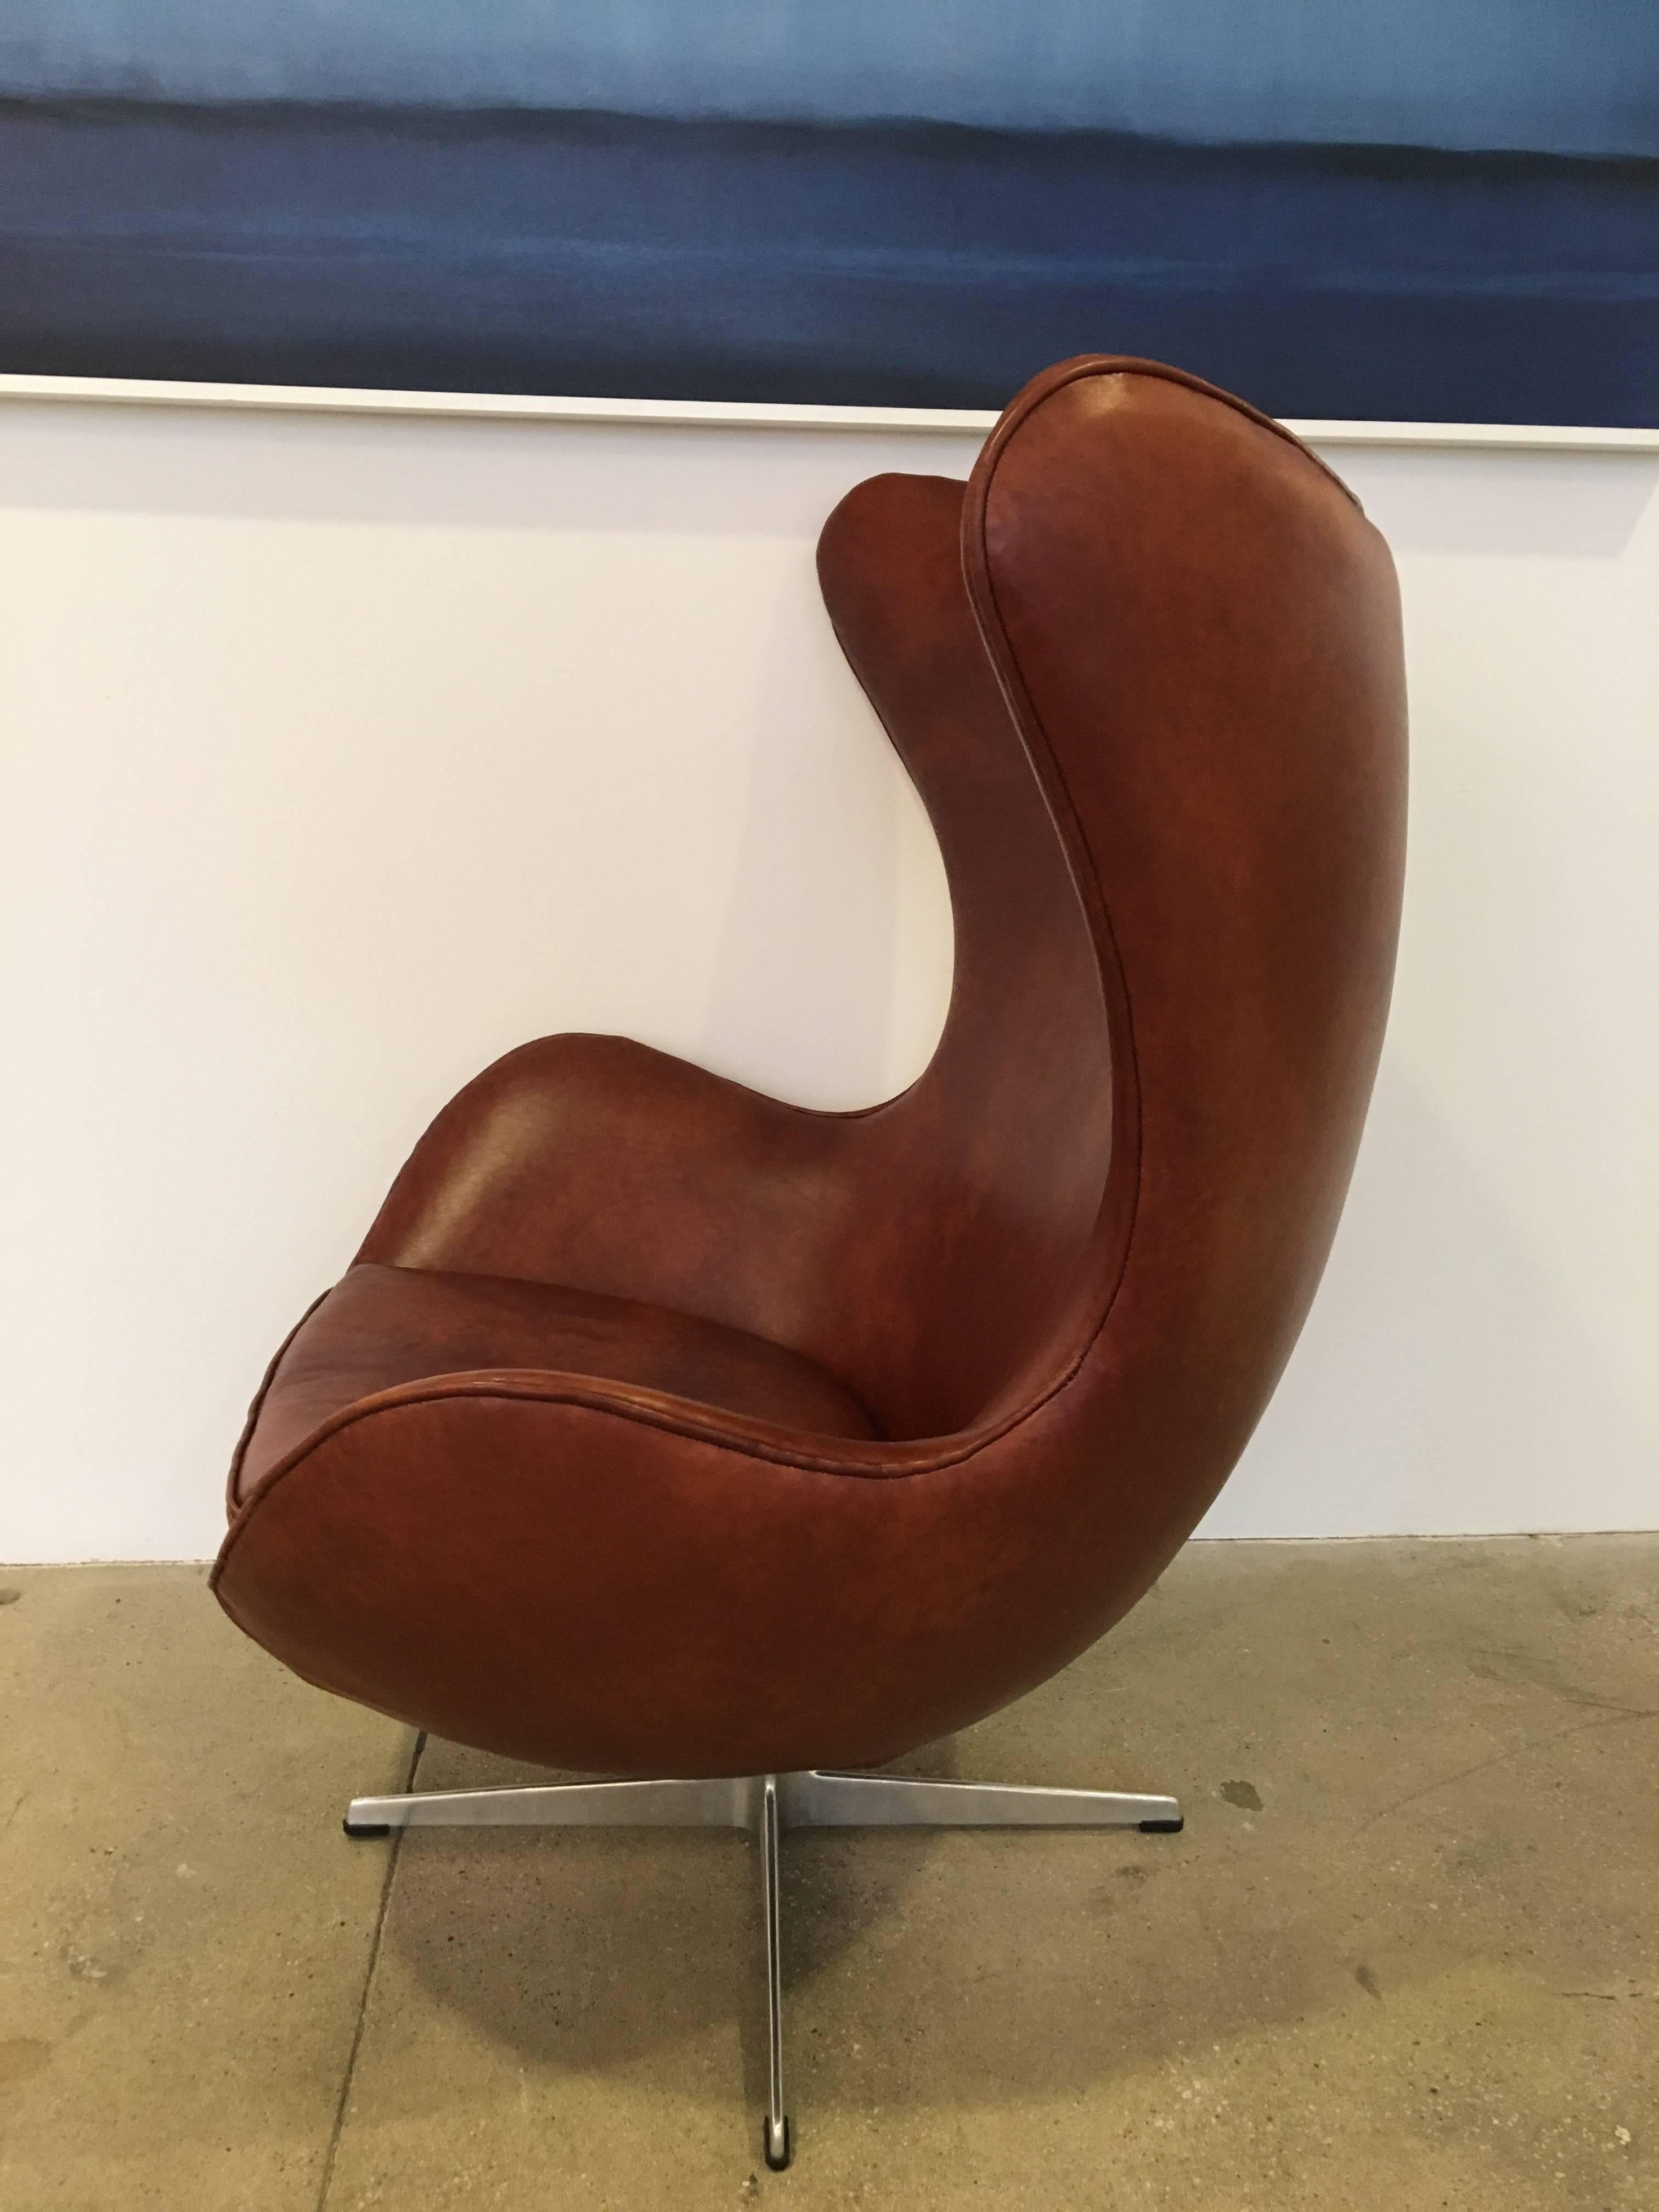 Original Arne Jacobsen Egg Stuhl:: hergestellt von Fritz Hansen im Jahr 1965. 
Der Stuhl wurde später mit patiniertem braunem Leder bezogen. Darunter befindet sich ein Aufkleber des Herstellers.